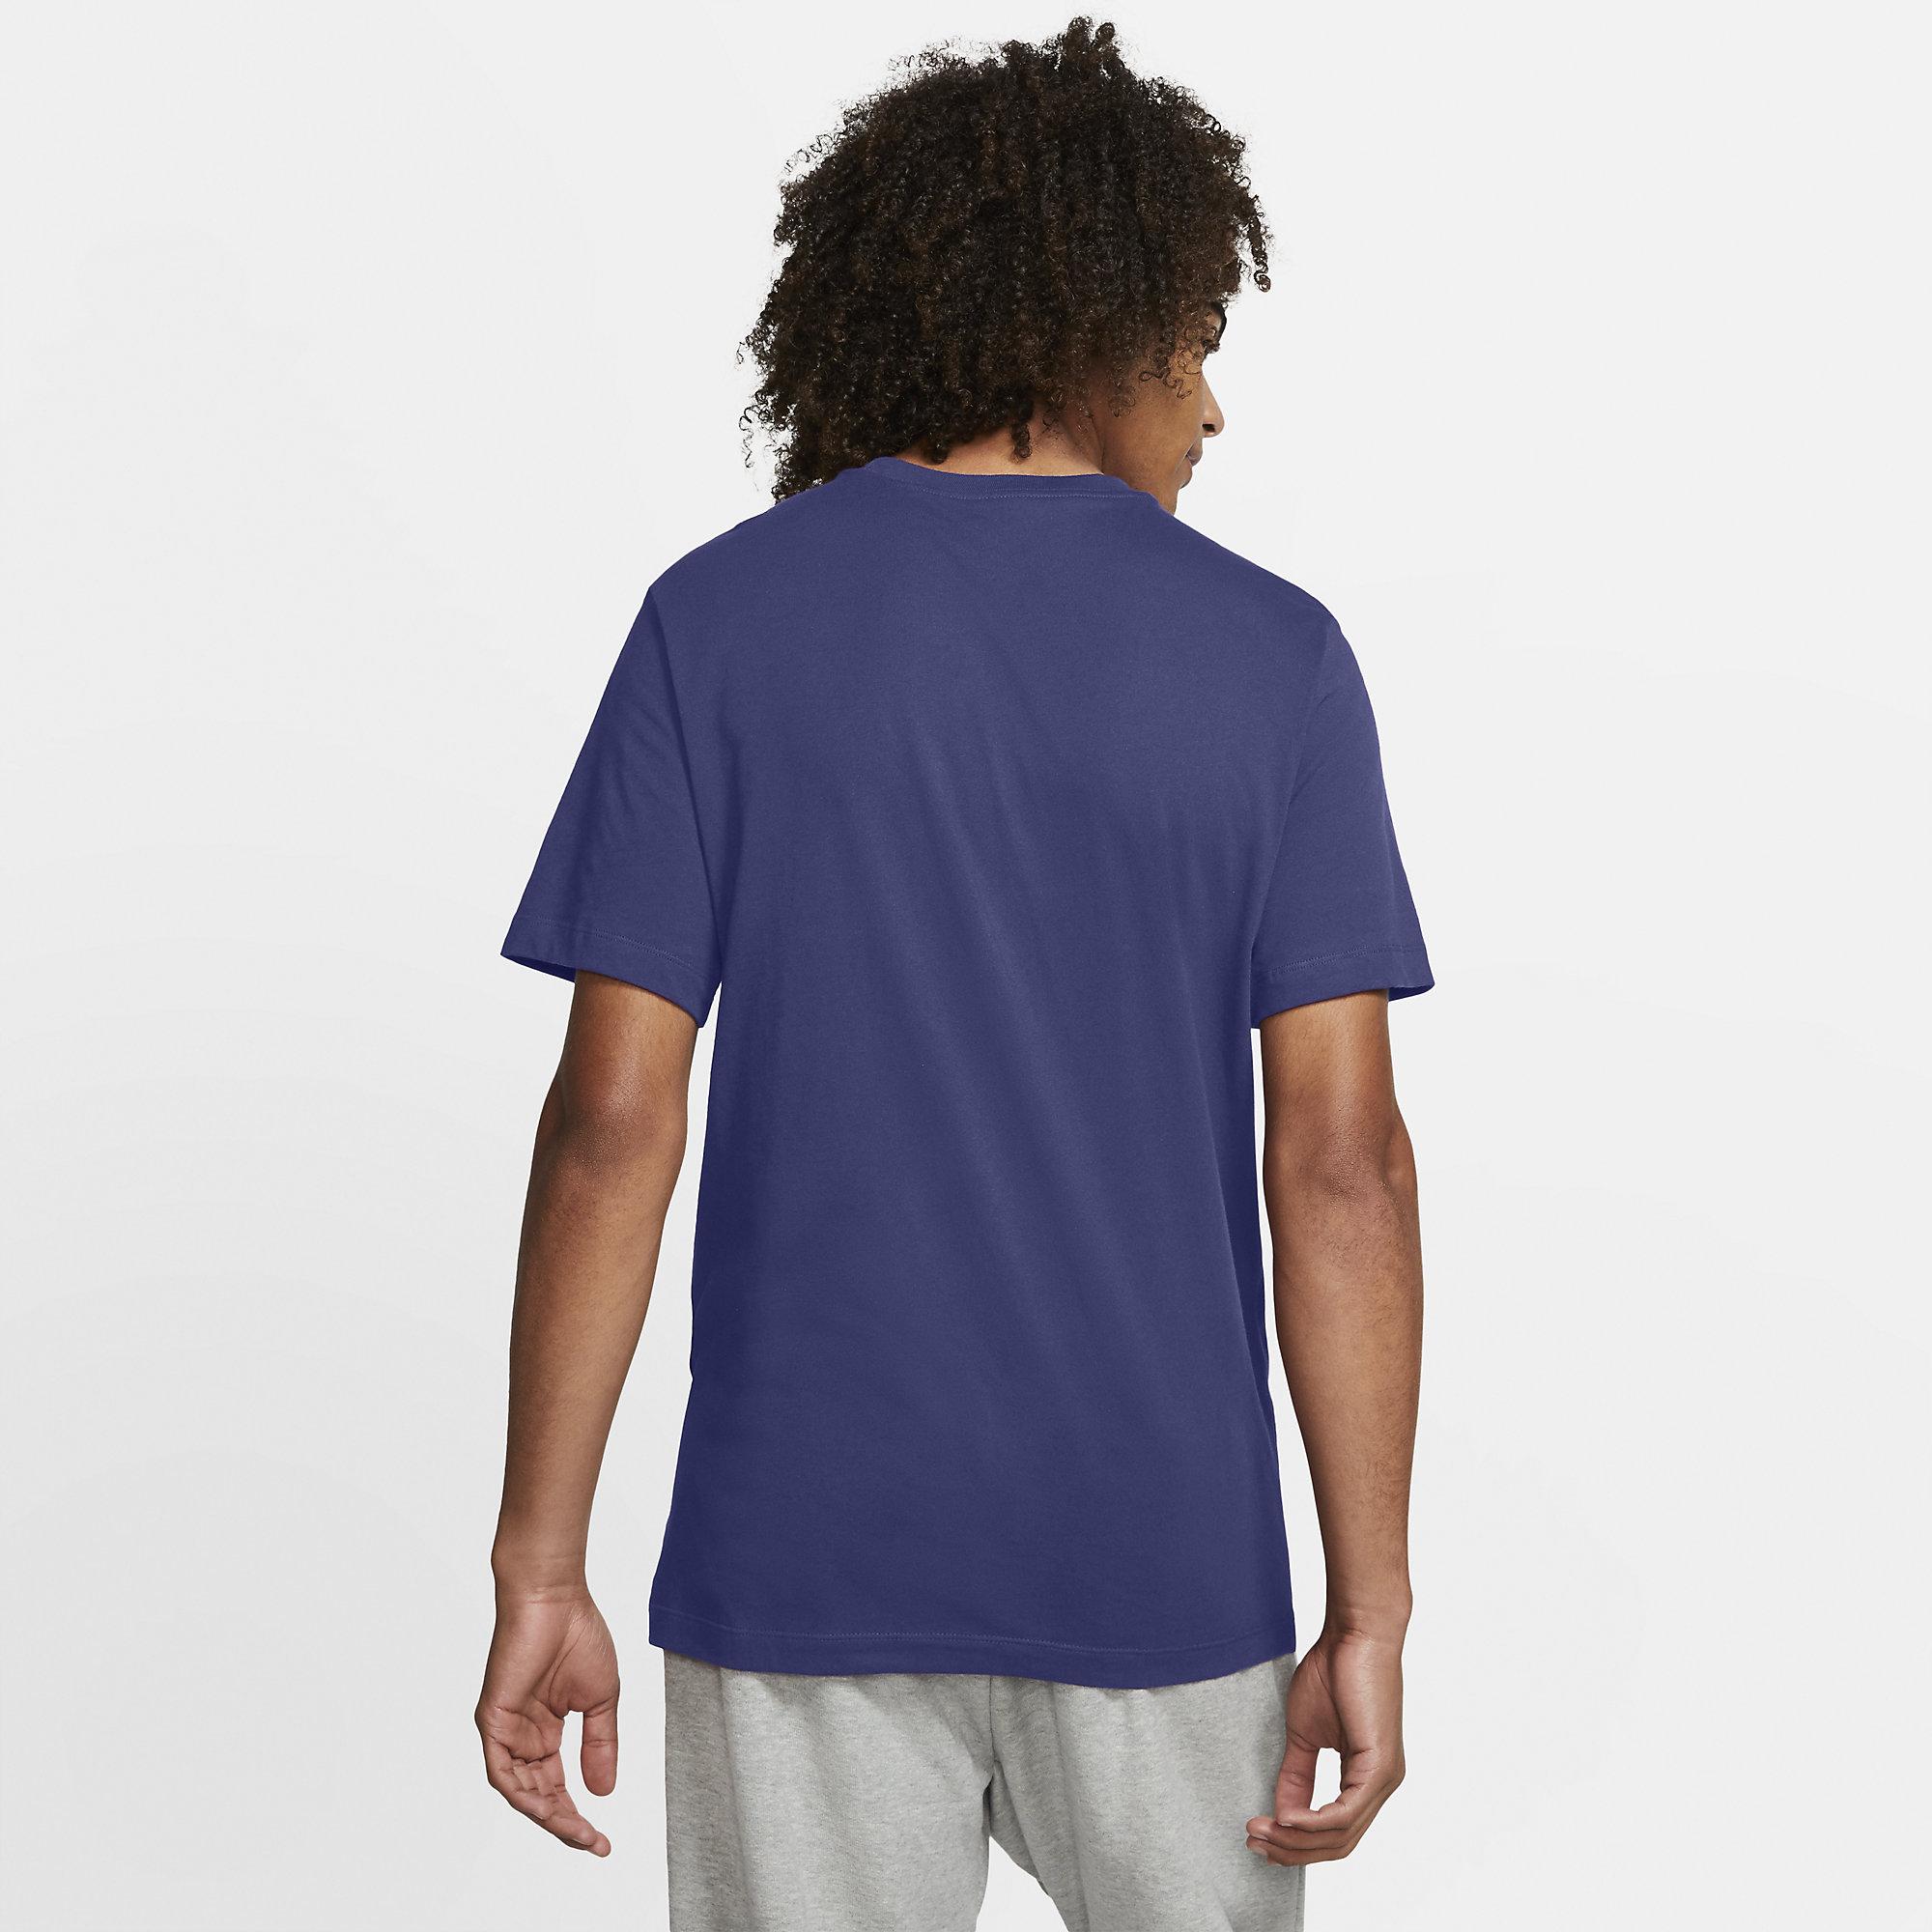 Nike Mens Tennis T-Shirt - Dark Purple Dust - Tennisnuts.com